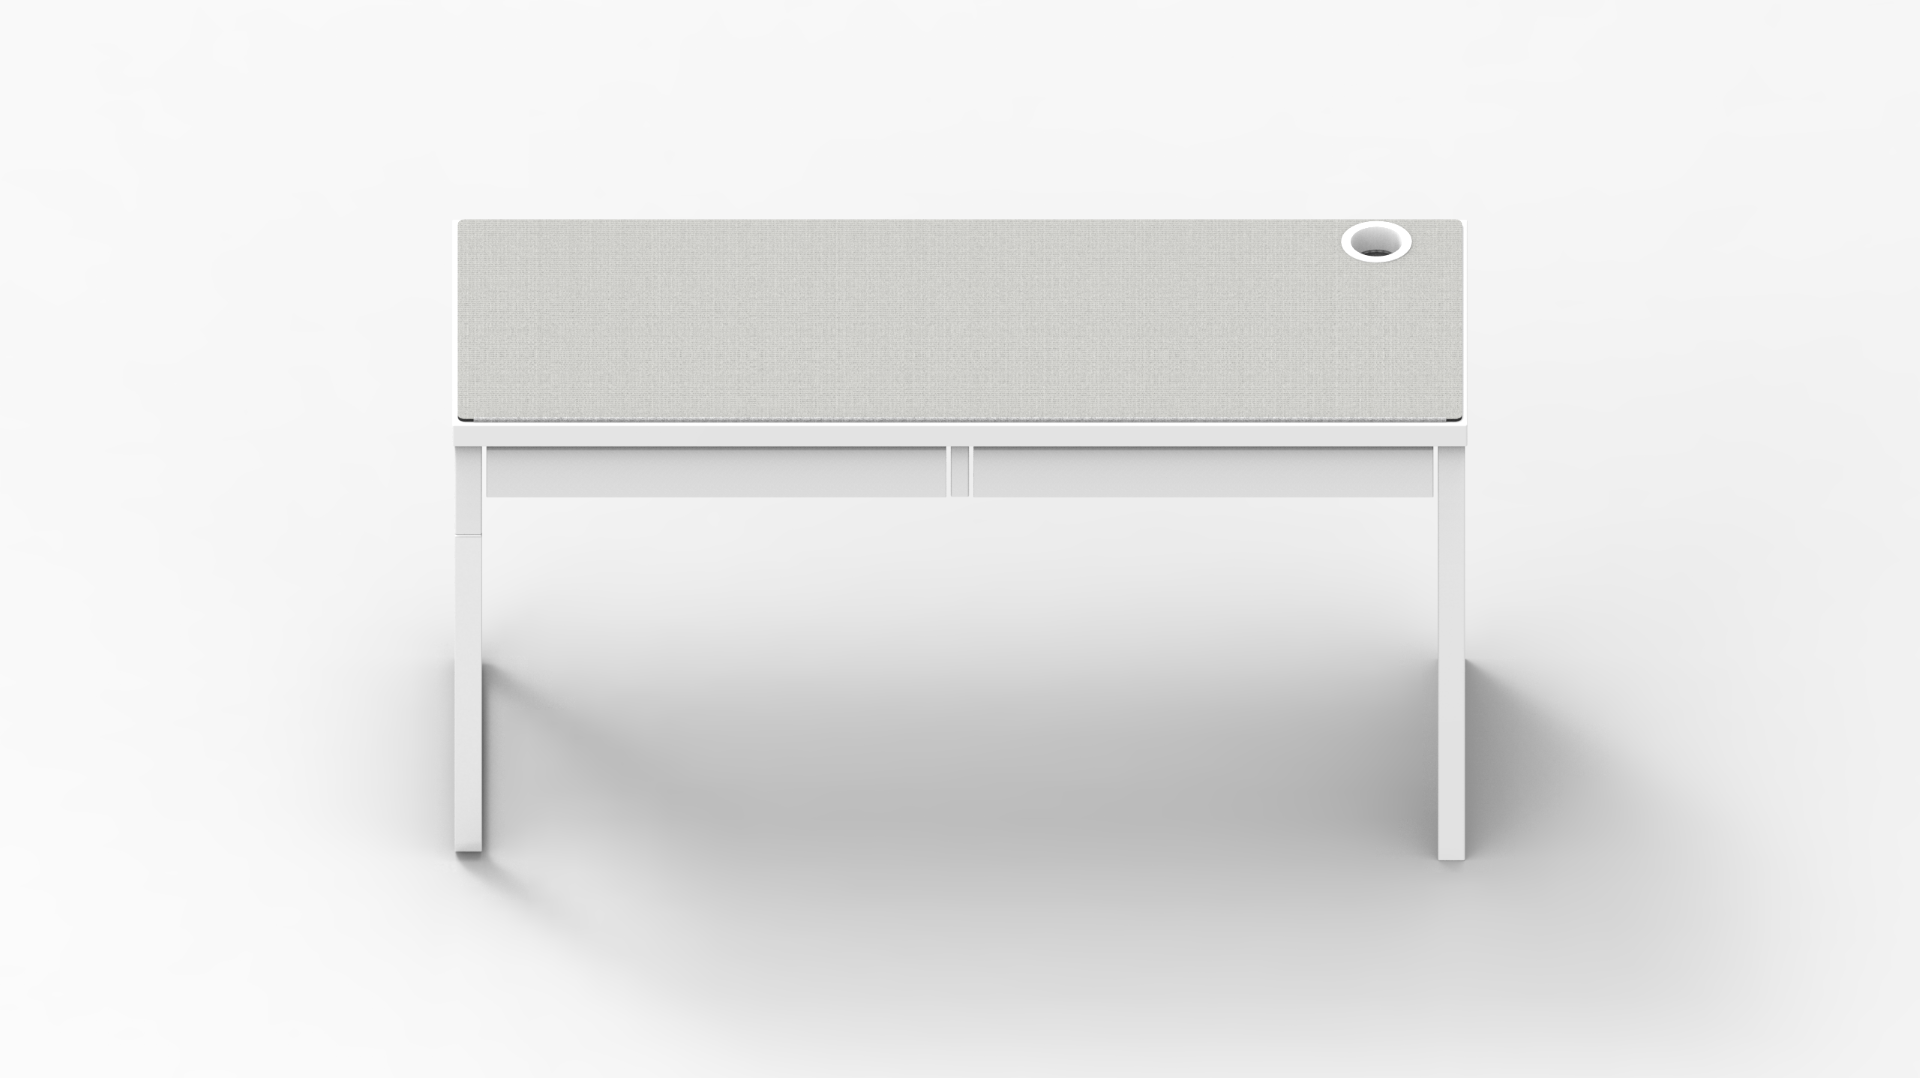 White IKEA MICKE Desk Mat (56" / 142 cm) Full-desk Mouse Pad MK7S78HG3C |40175|